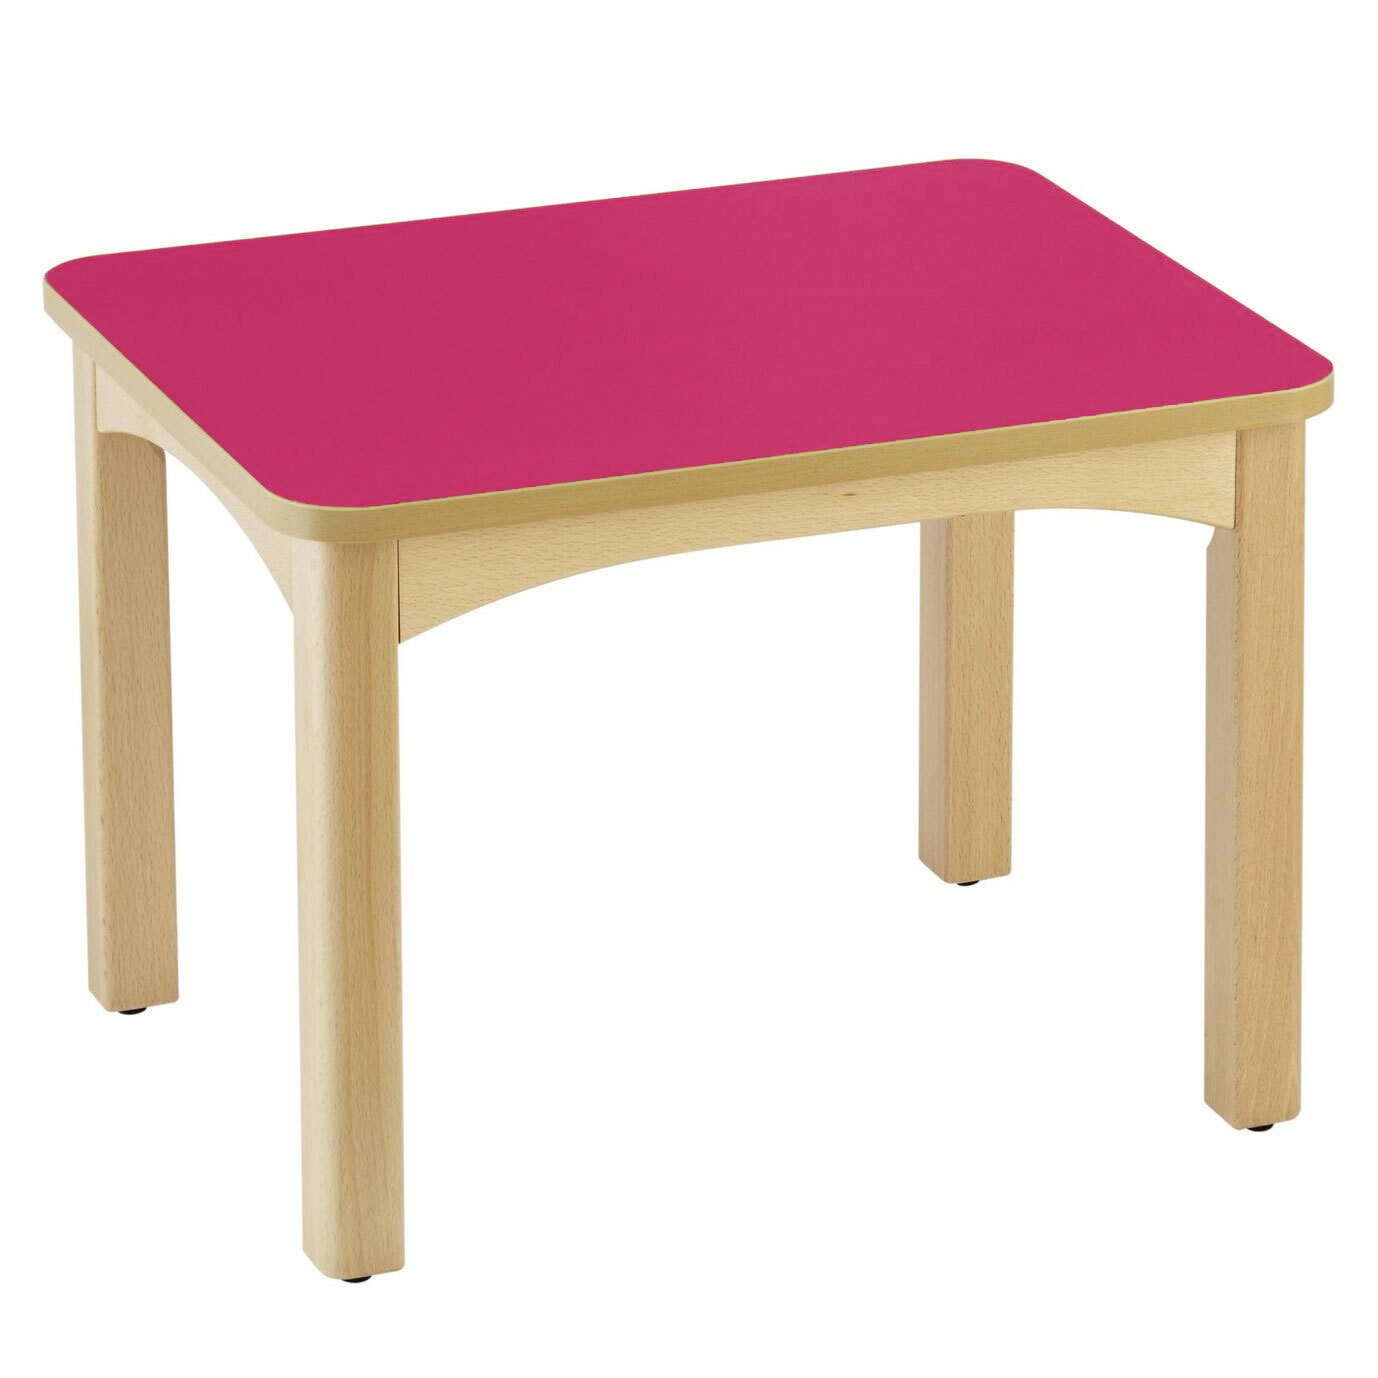 Table en bois pour crèche 60 x 50 cm t0 framboise